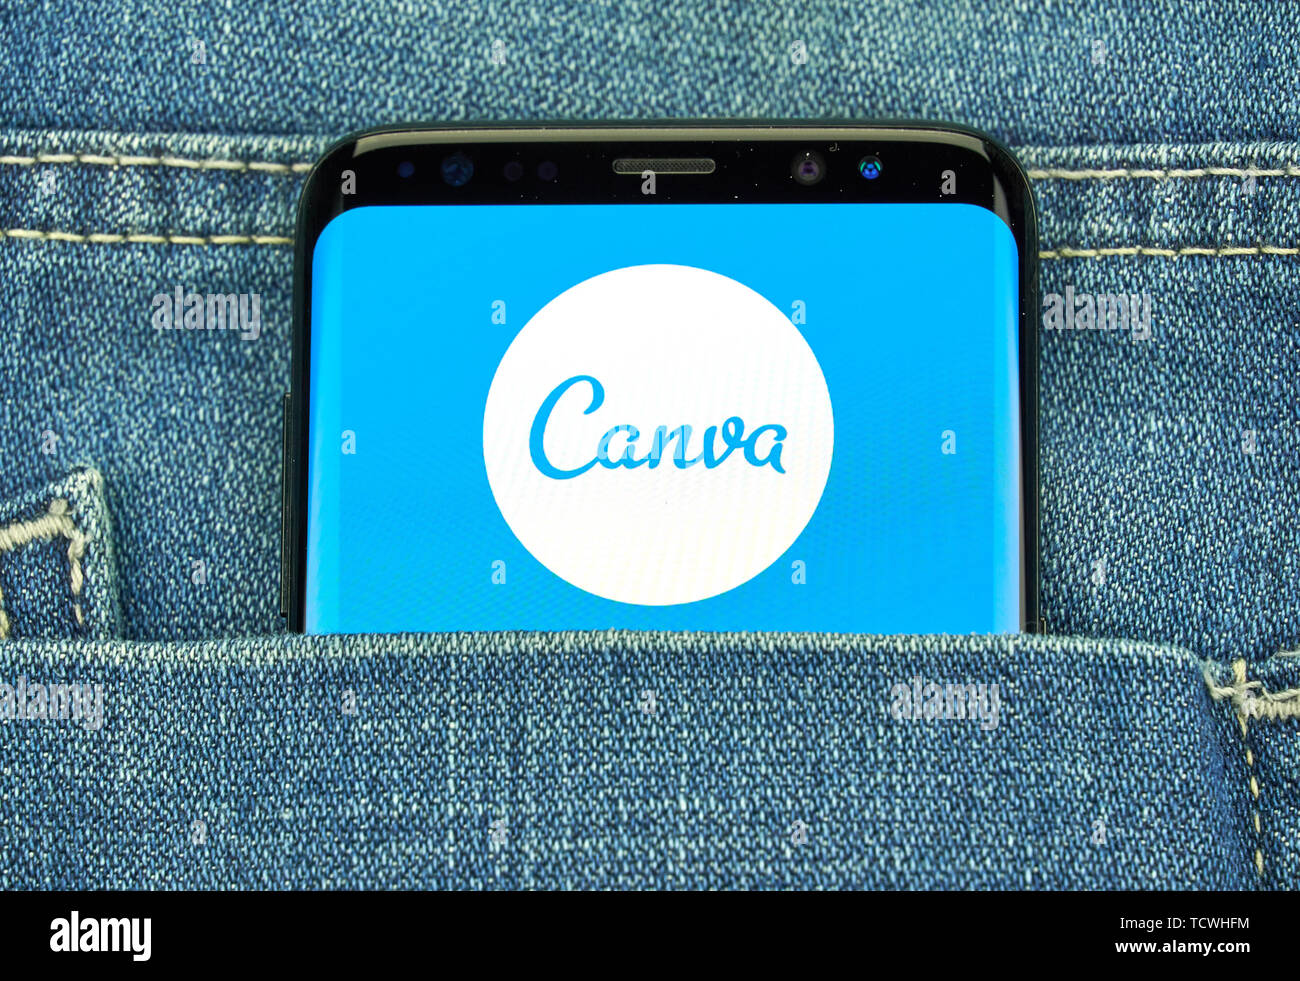 MONTREAL, KANADA - Dezember 23, 2018: Canva android app und Logo auf Samsung S8-Bildschirm. Canva ist ein grafik-design Anwendung, Werkzeug und Website Stockfoto